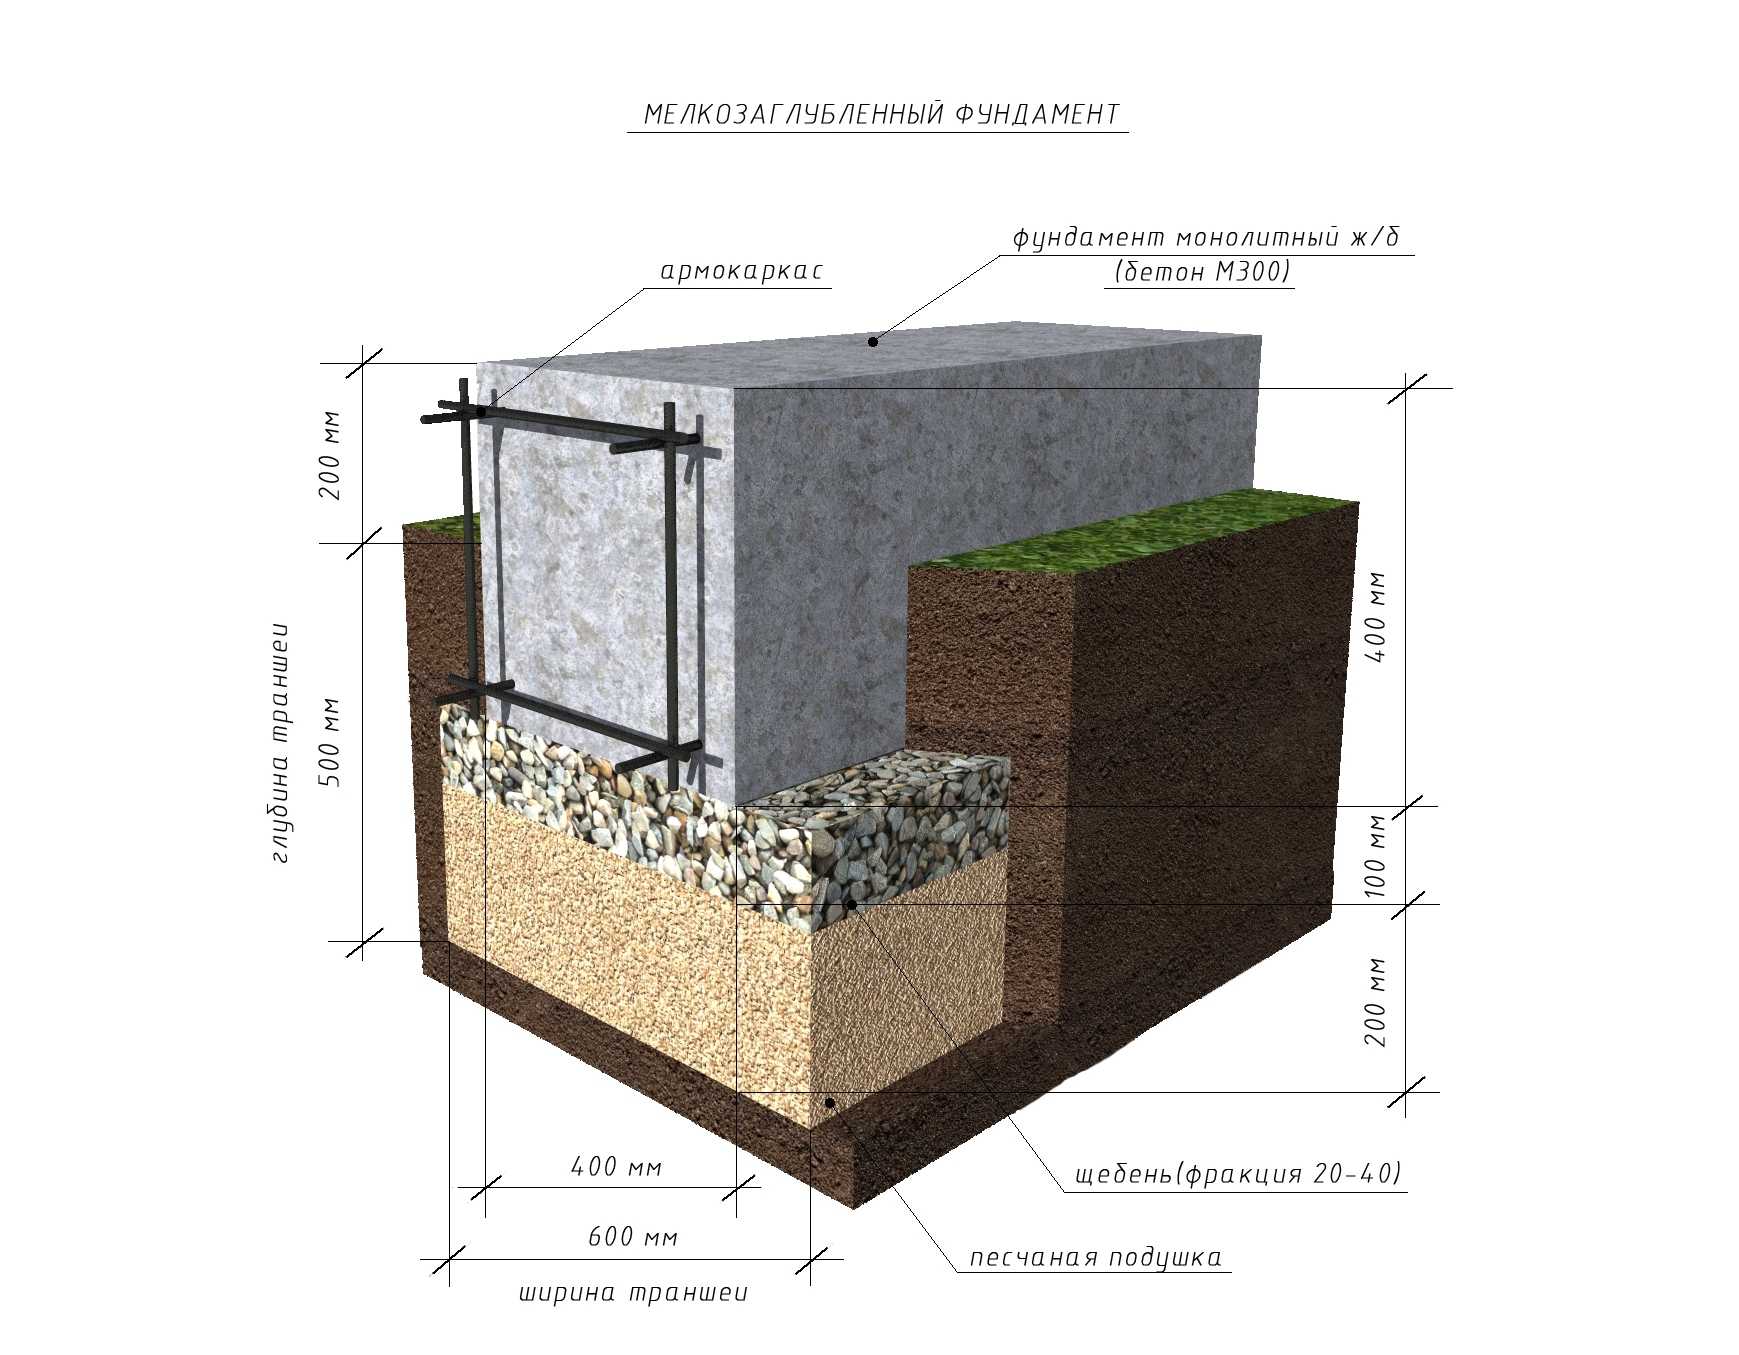 Фундамент для дома из газоблоков – какие виды, типы нужно лучше использовать, в зависимости от грунта Ленточный мелкозаглубленный, глубокого заложения, монолитный, свайный, столбчатый, из кирпича